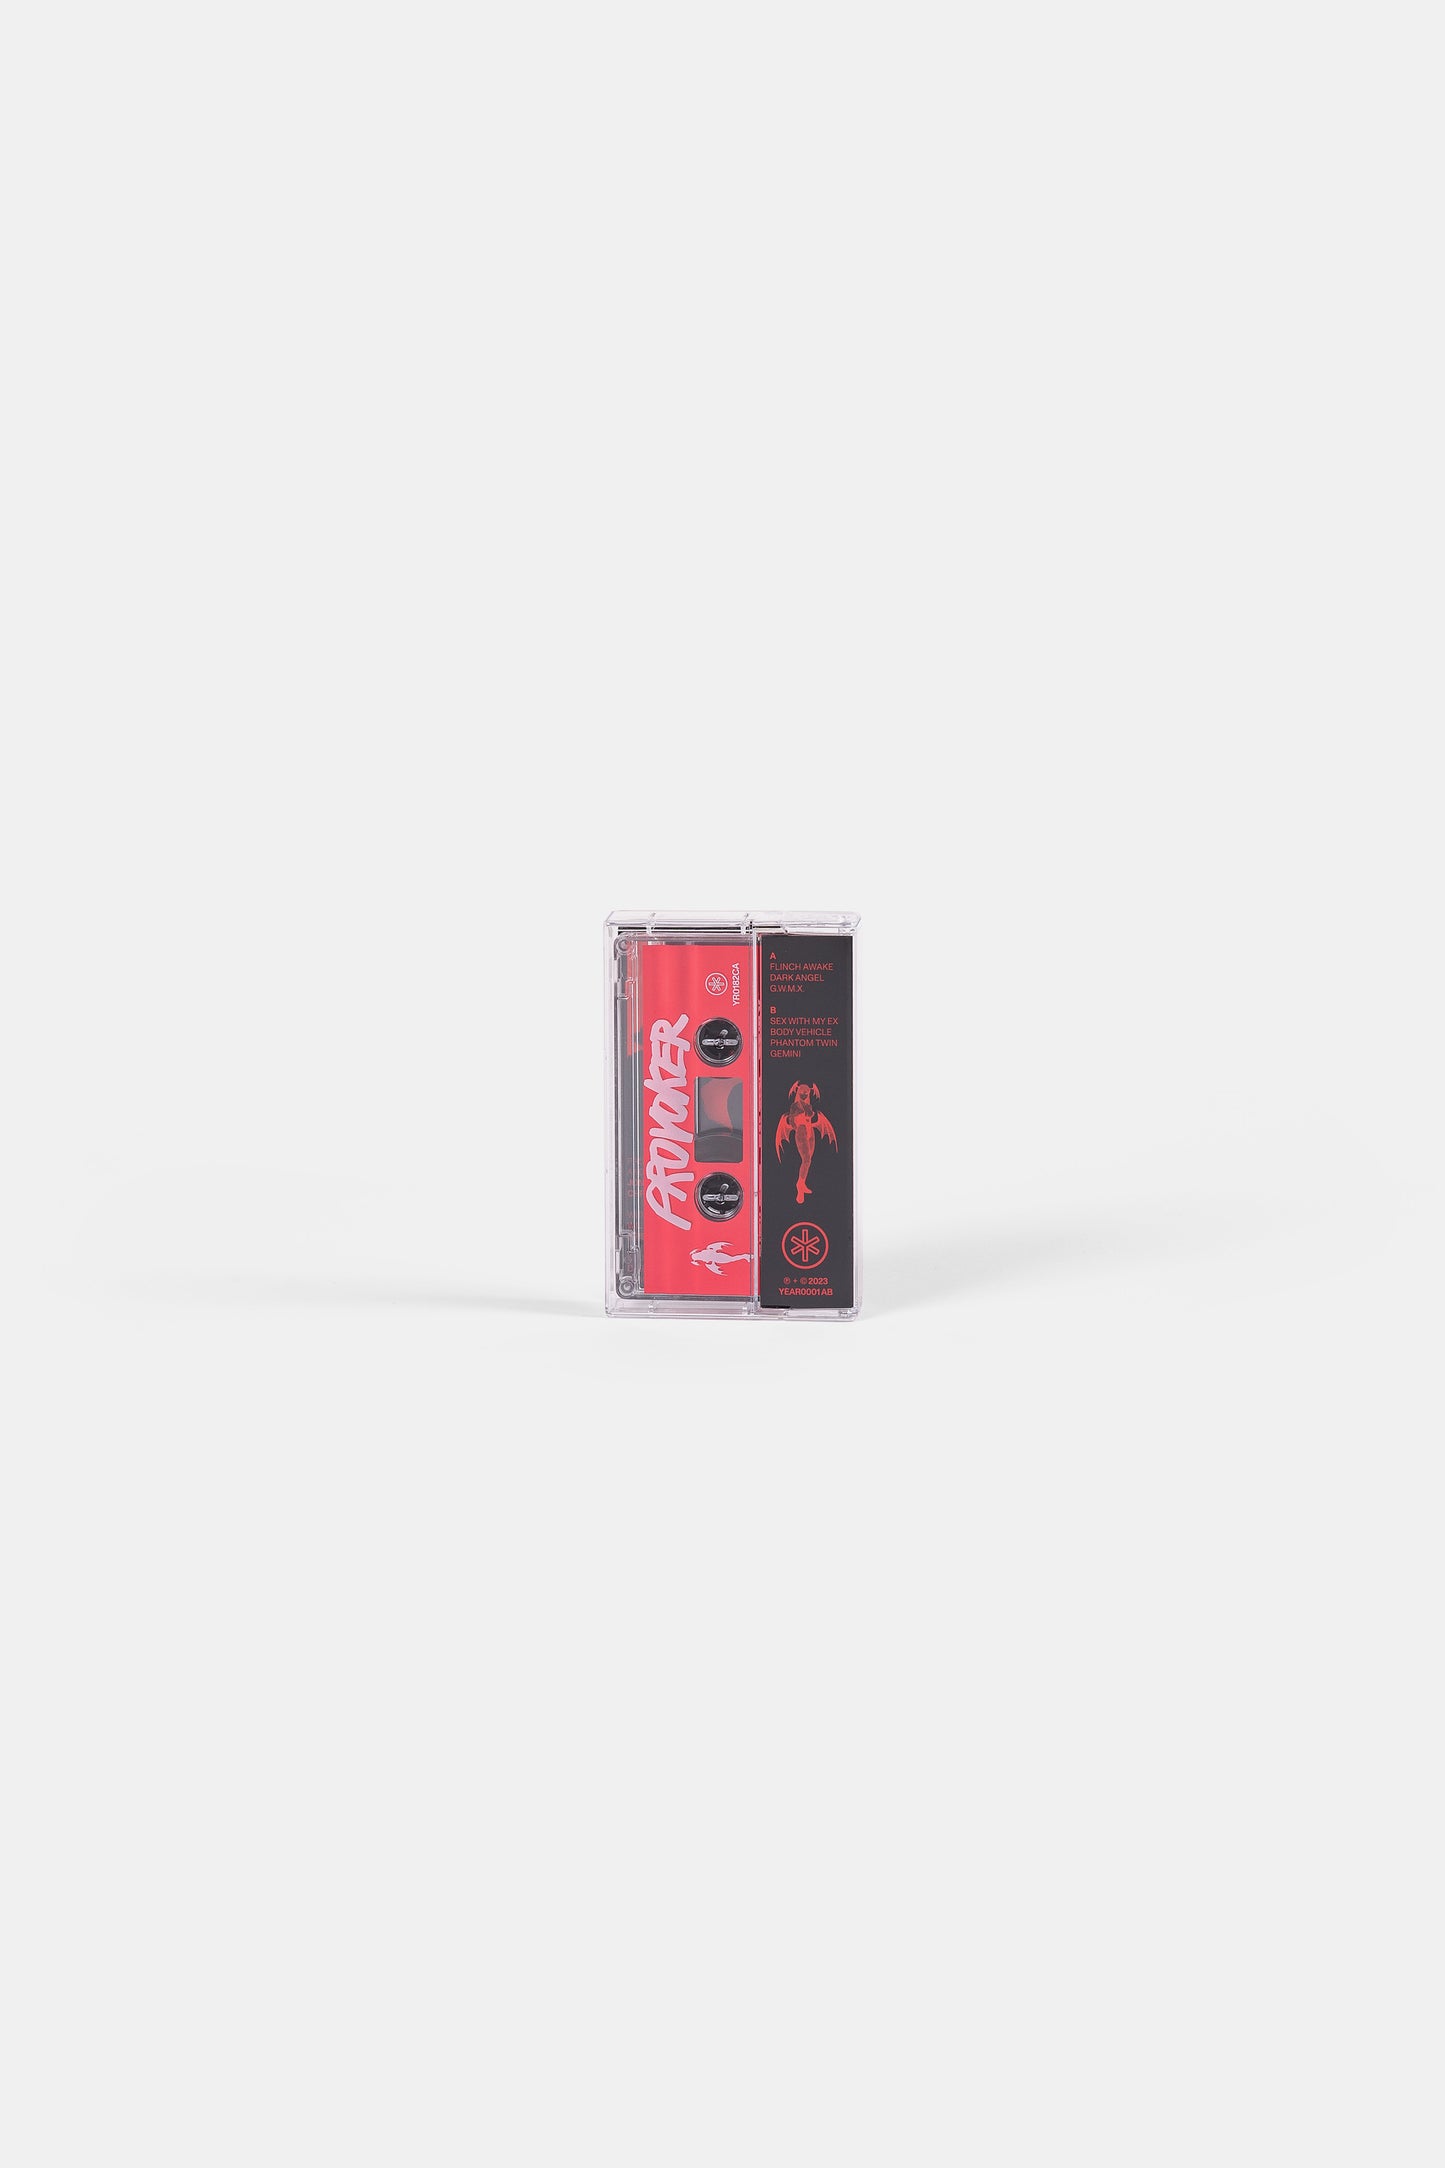 Dark Angel Cassette / Red (1st issue)